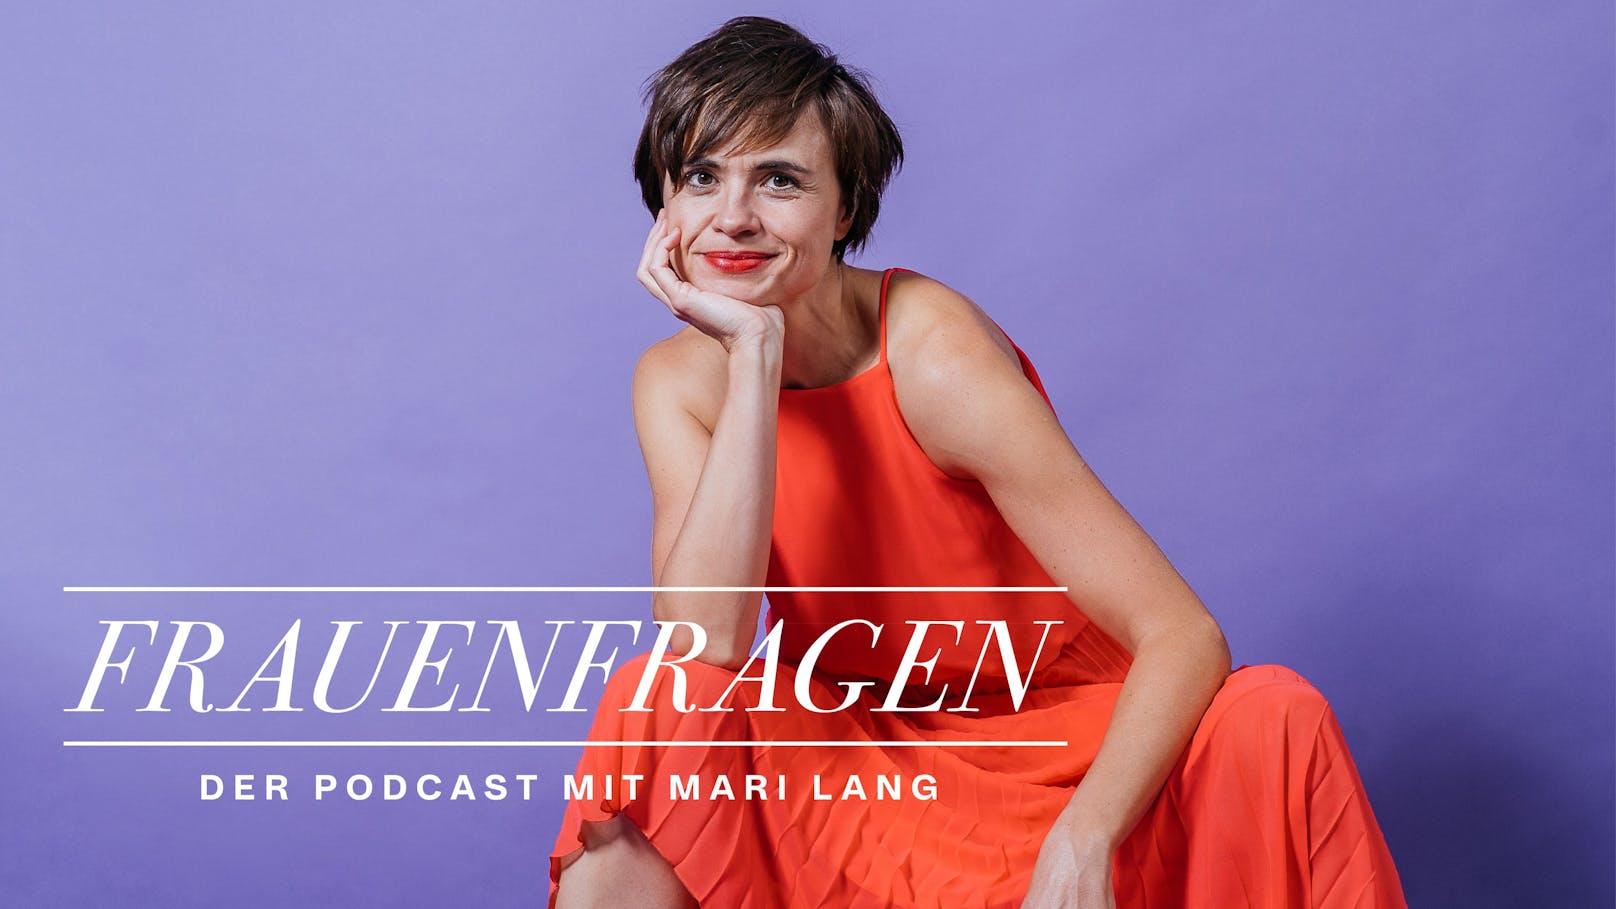 Mari Lang führt den Podcast "Frauenfragen" seit 2020.